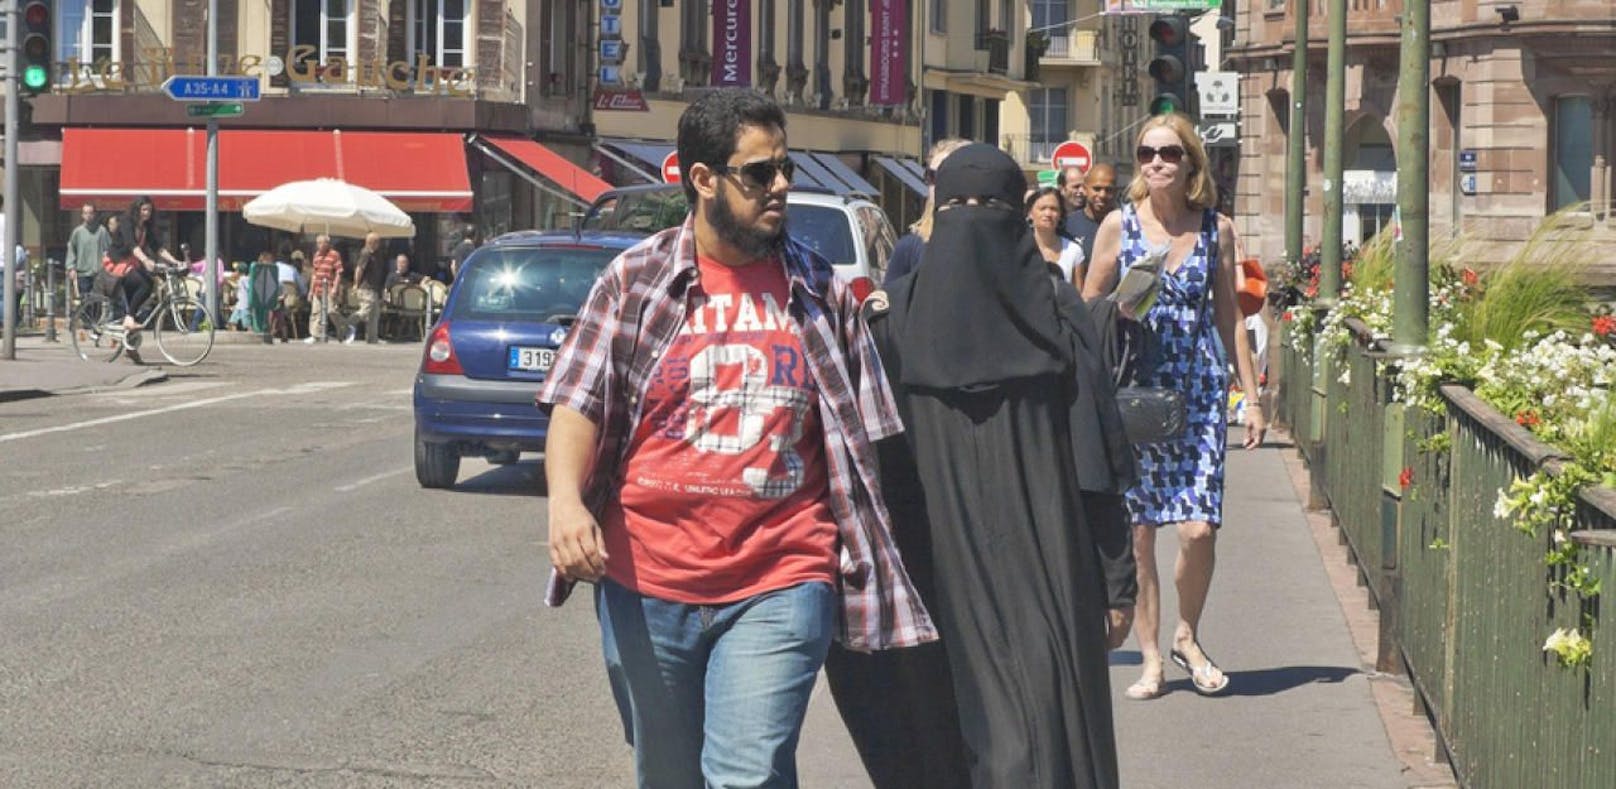 Einer Frau wurde die Burka vom Kopf gerissen